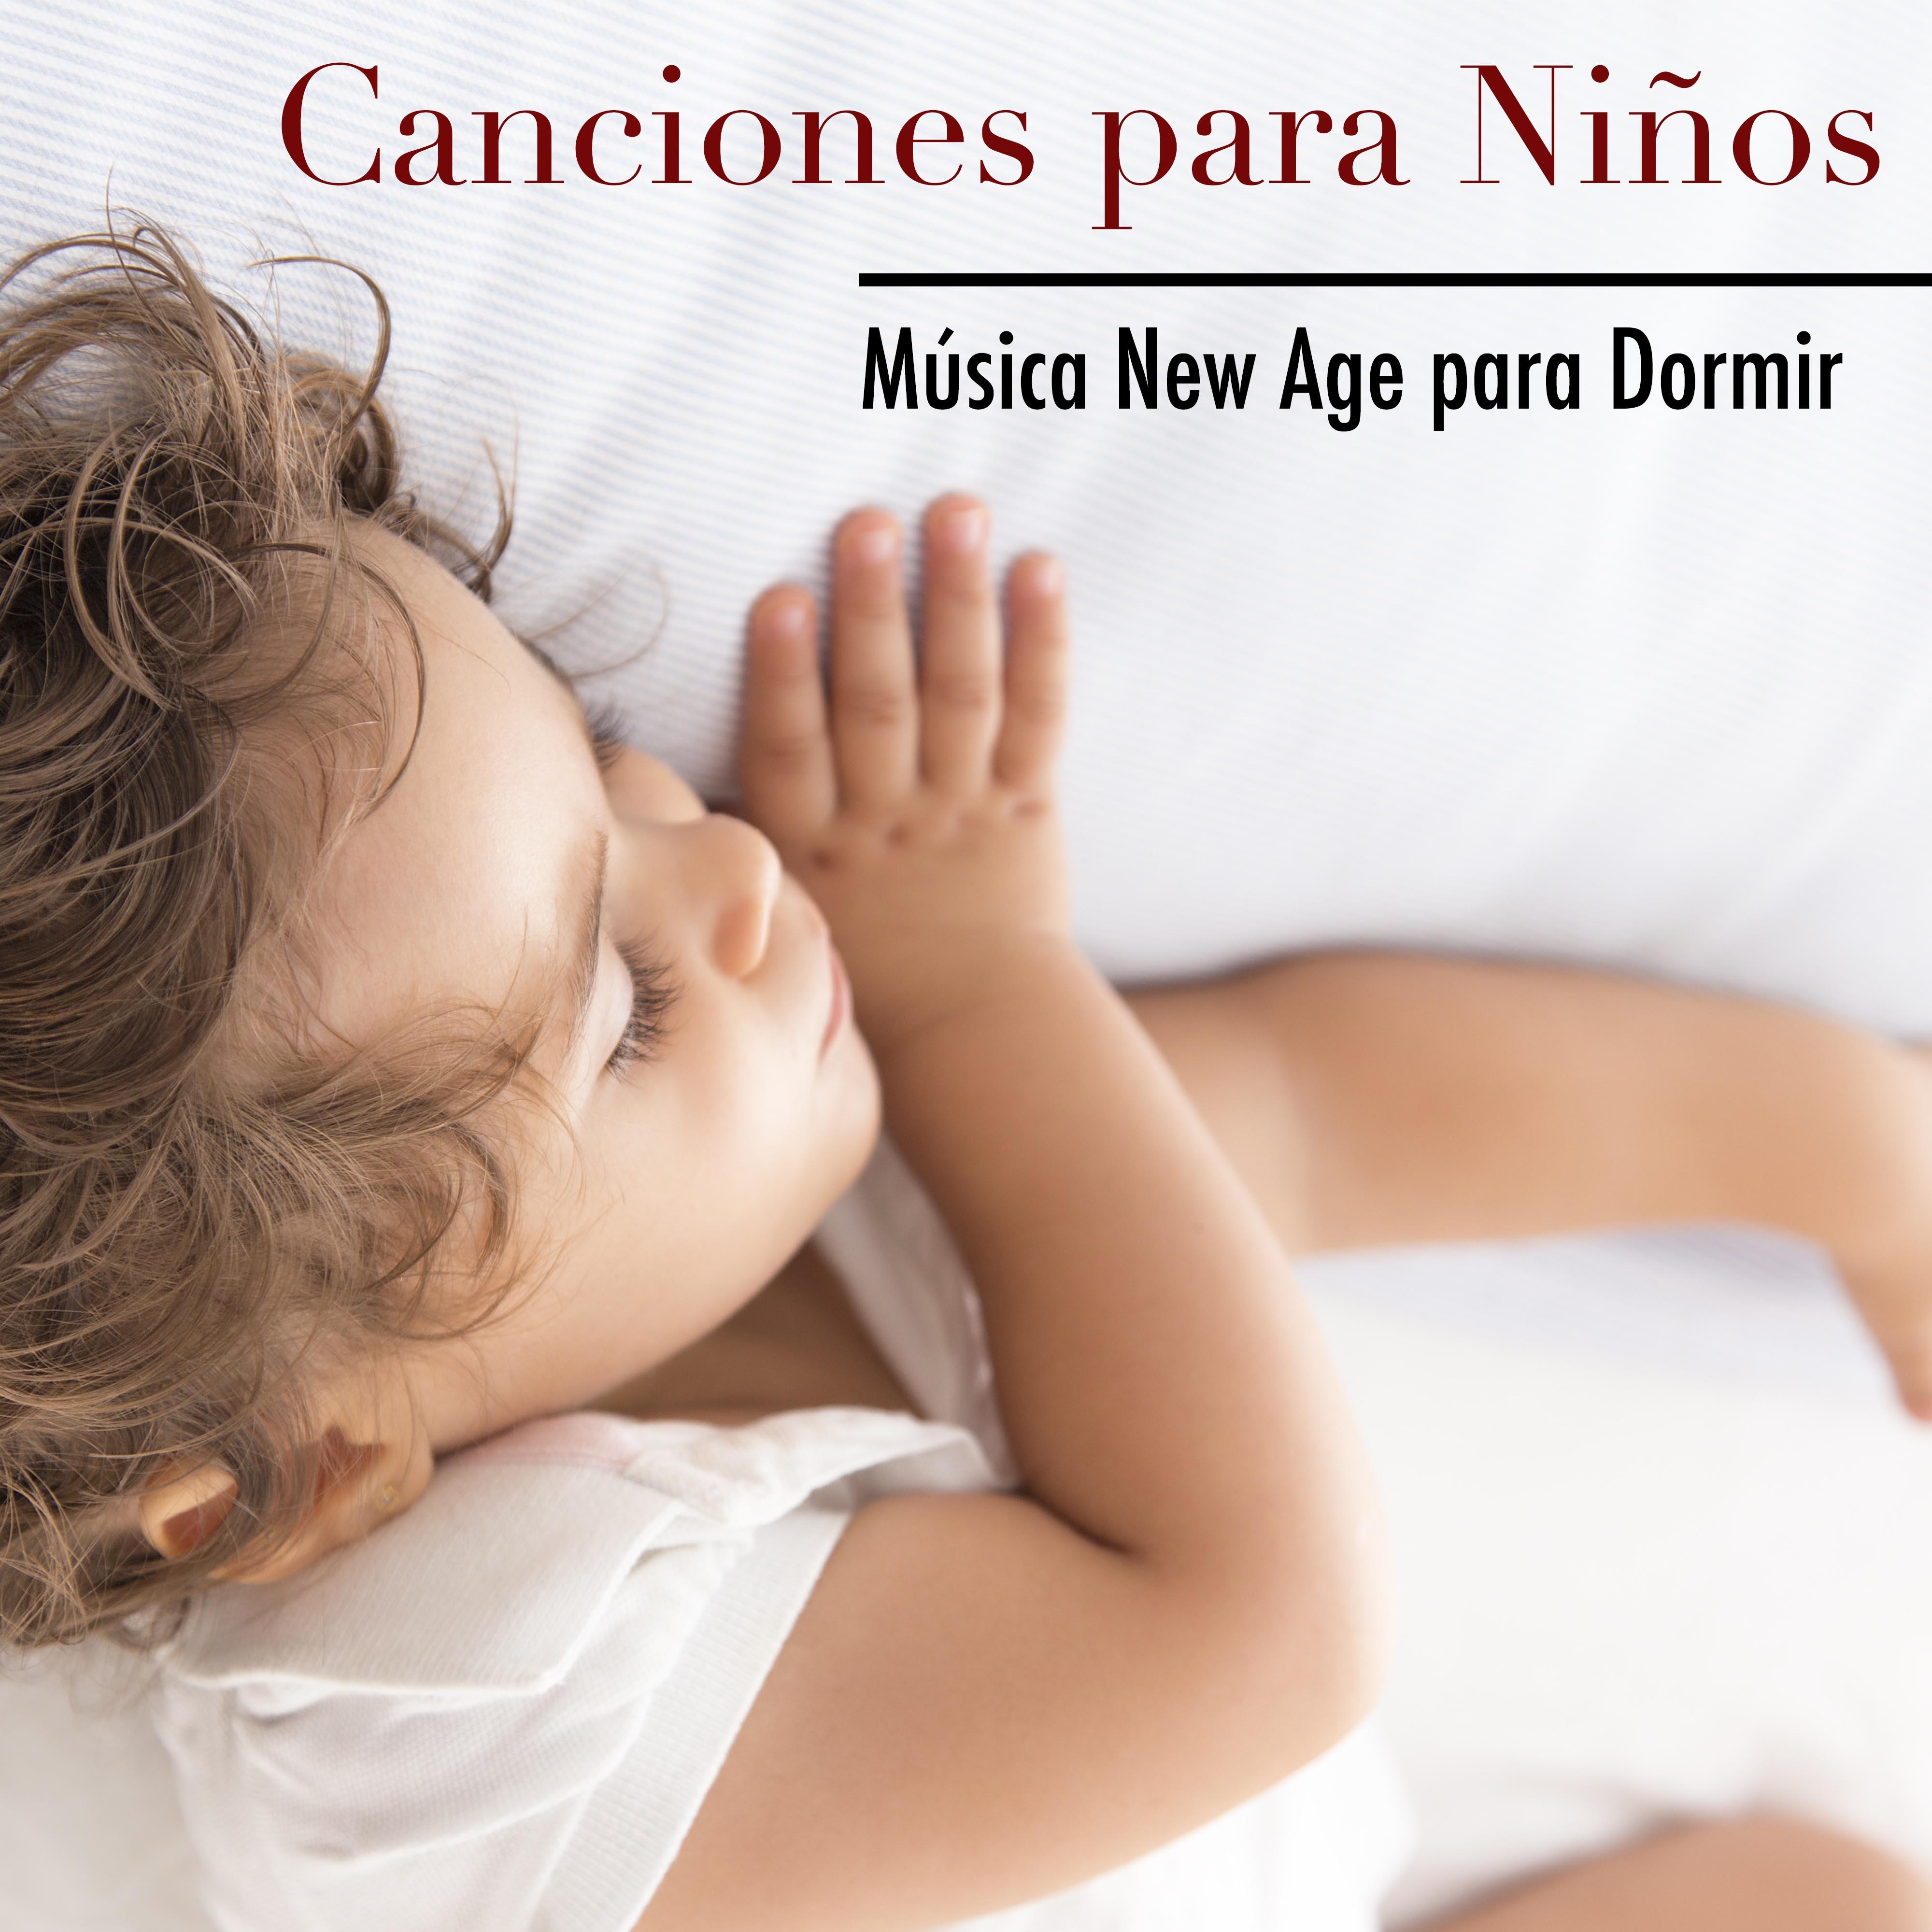 Canciones para Niños - Música New Age para Dormir y Canciones de Cuna para Bebes con Sonidos de la Naturaleza